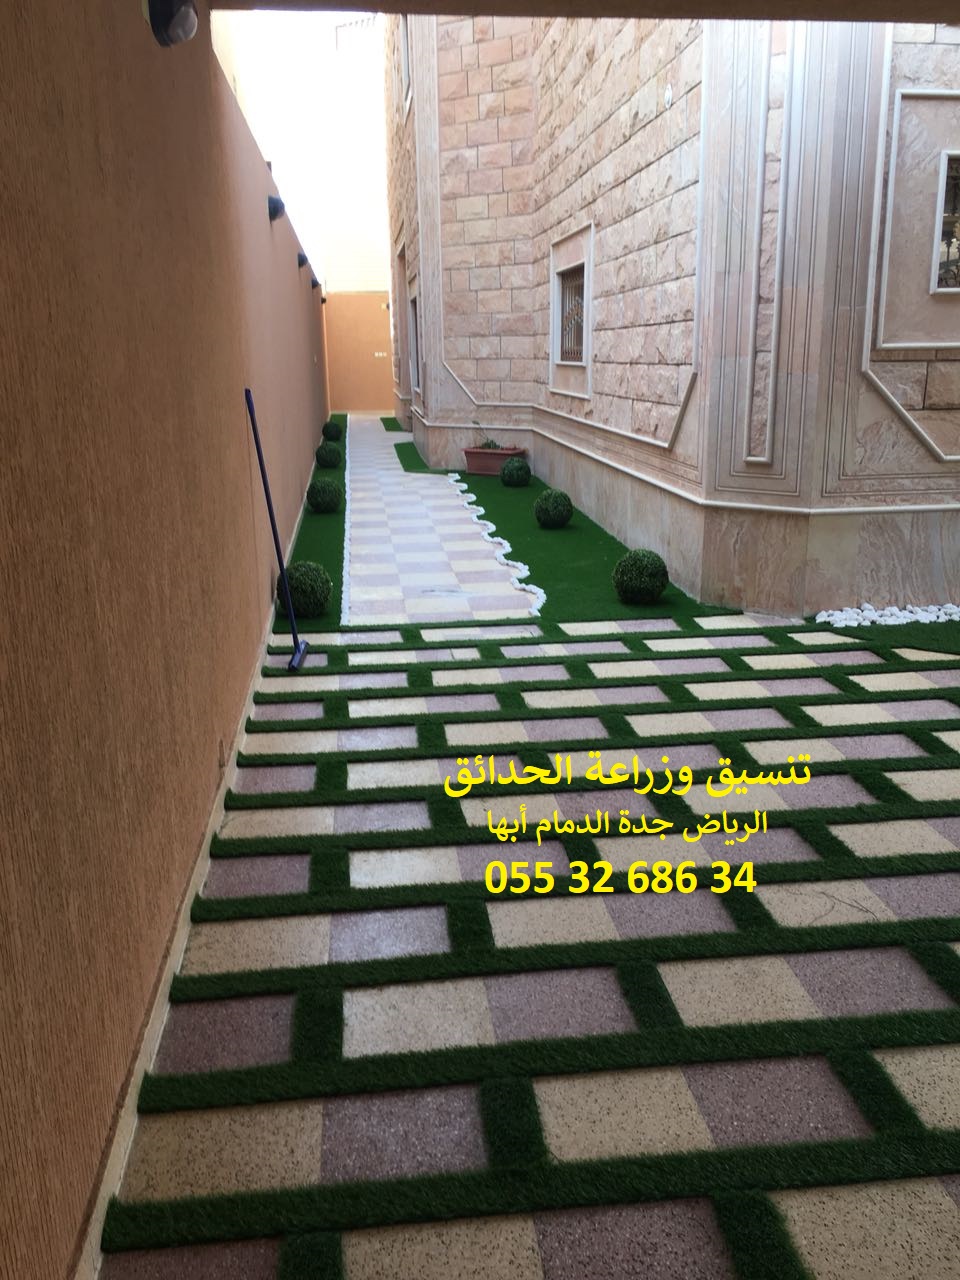 شركة تنسيق حدائق الرياض جدة الدمام ابها 0553268634 P_8670p4zv10